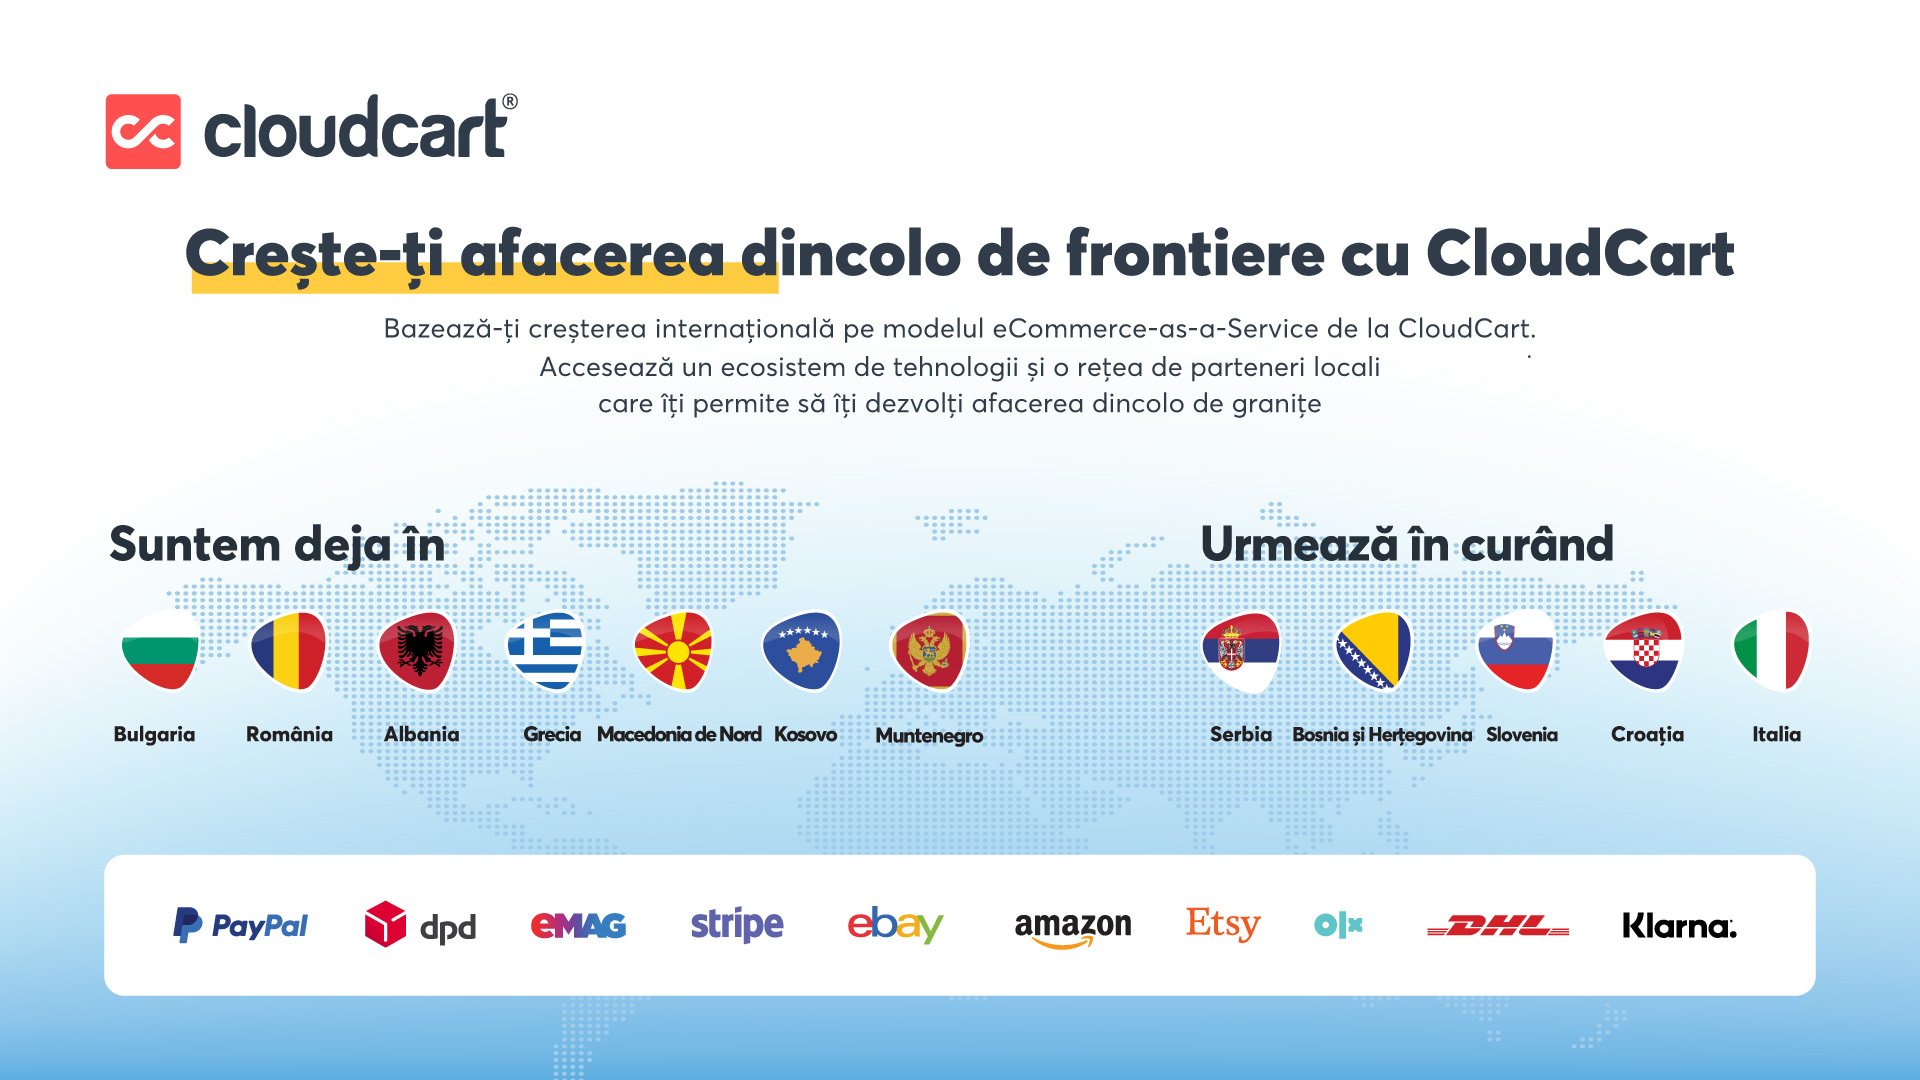 CloudCart